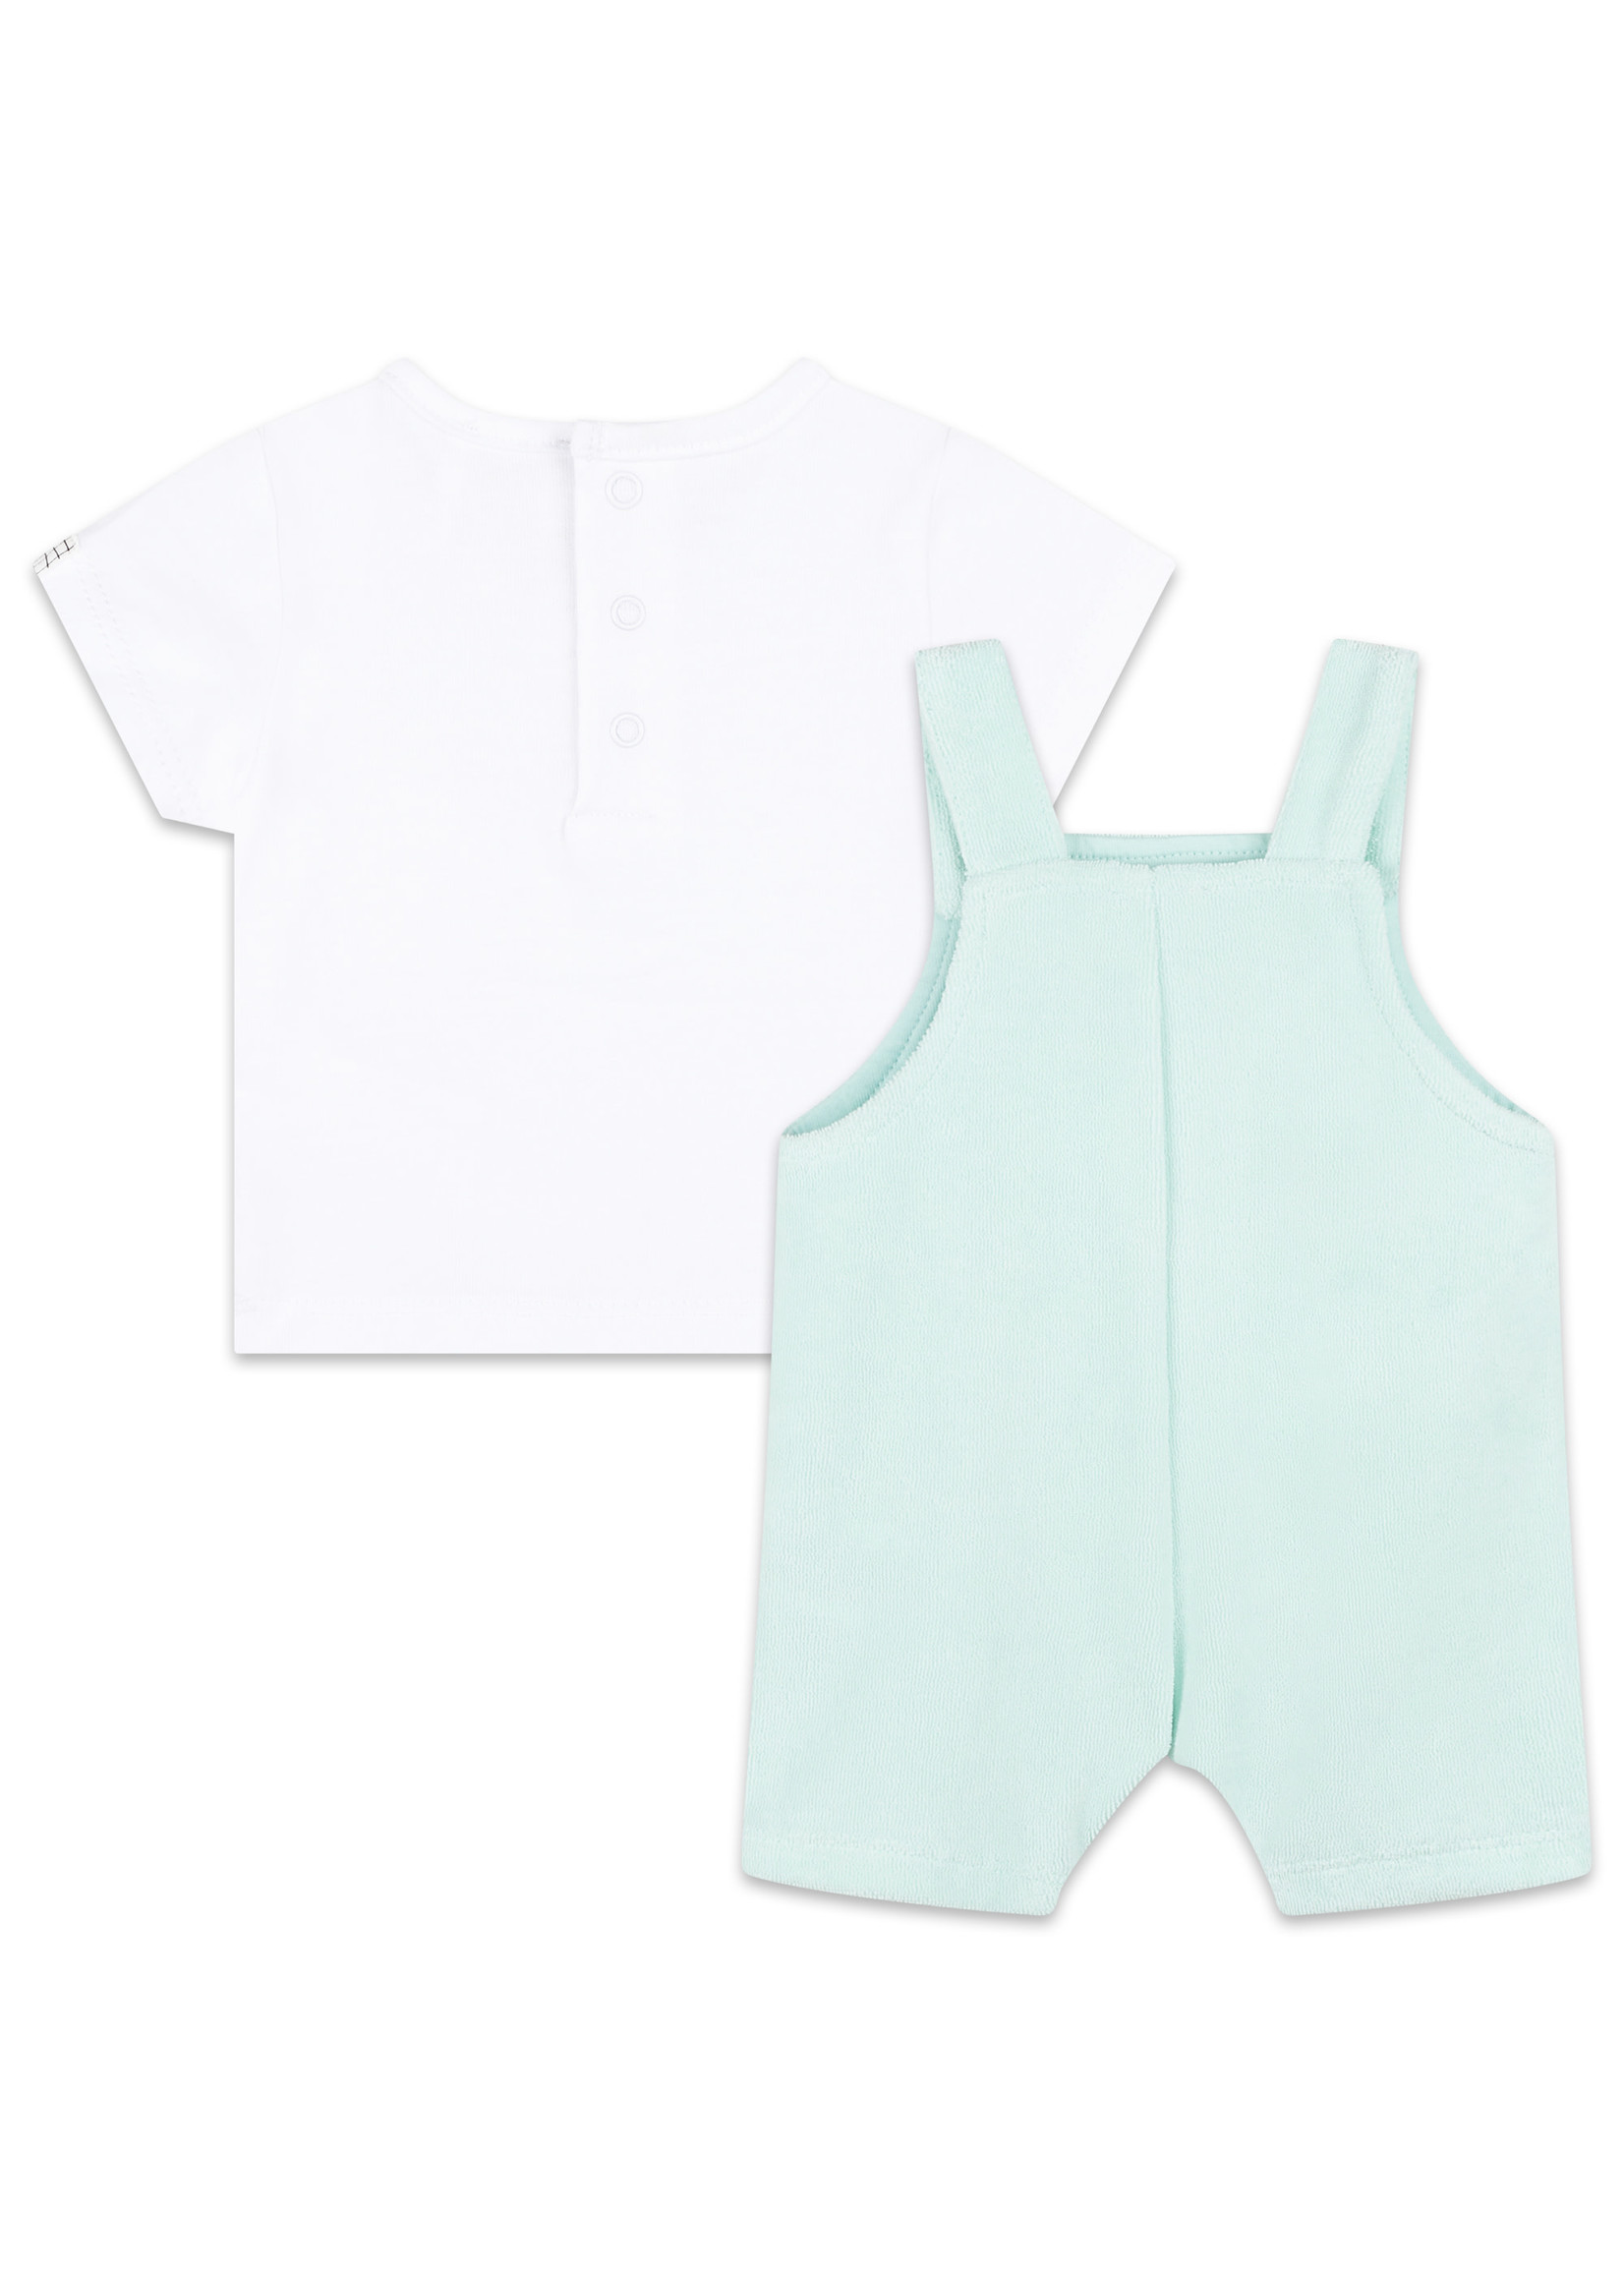 Carrément Beau Carrément Beau Babyboy set salopette & t-shirt pastel green/white - Y98155